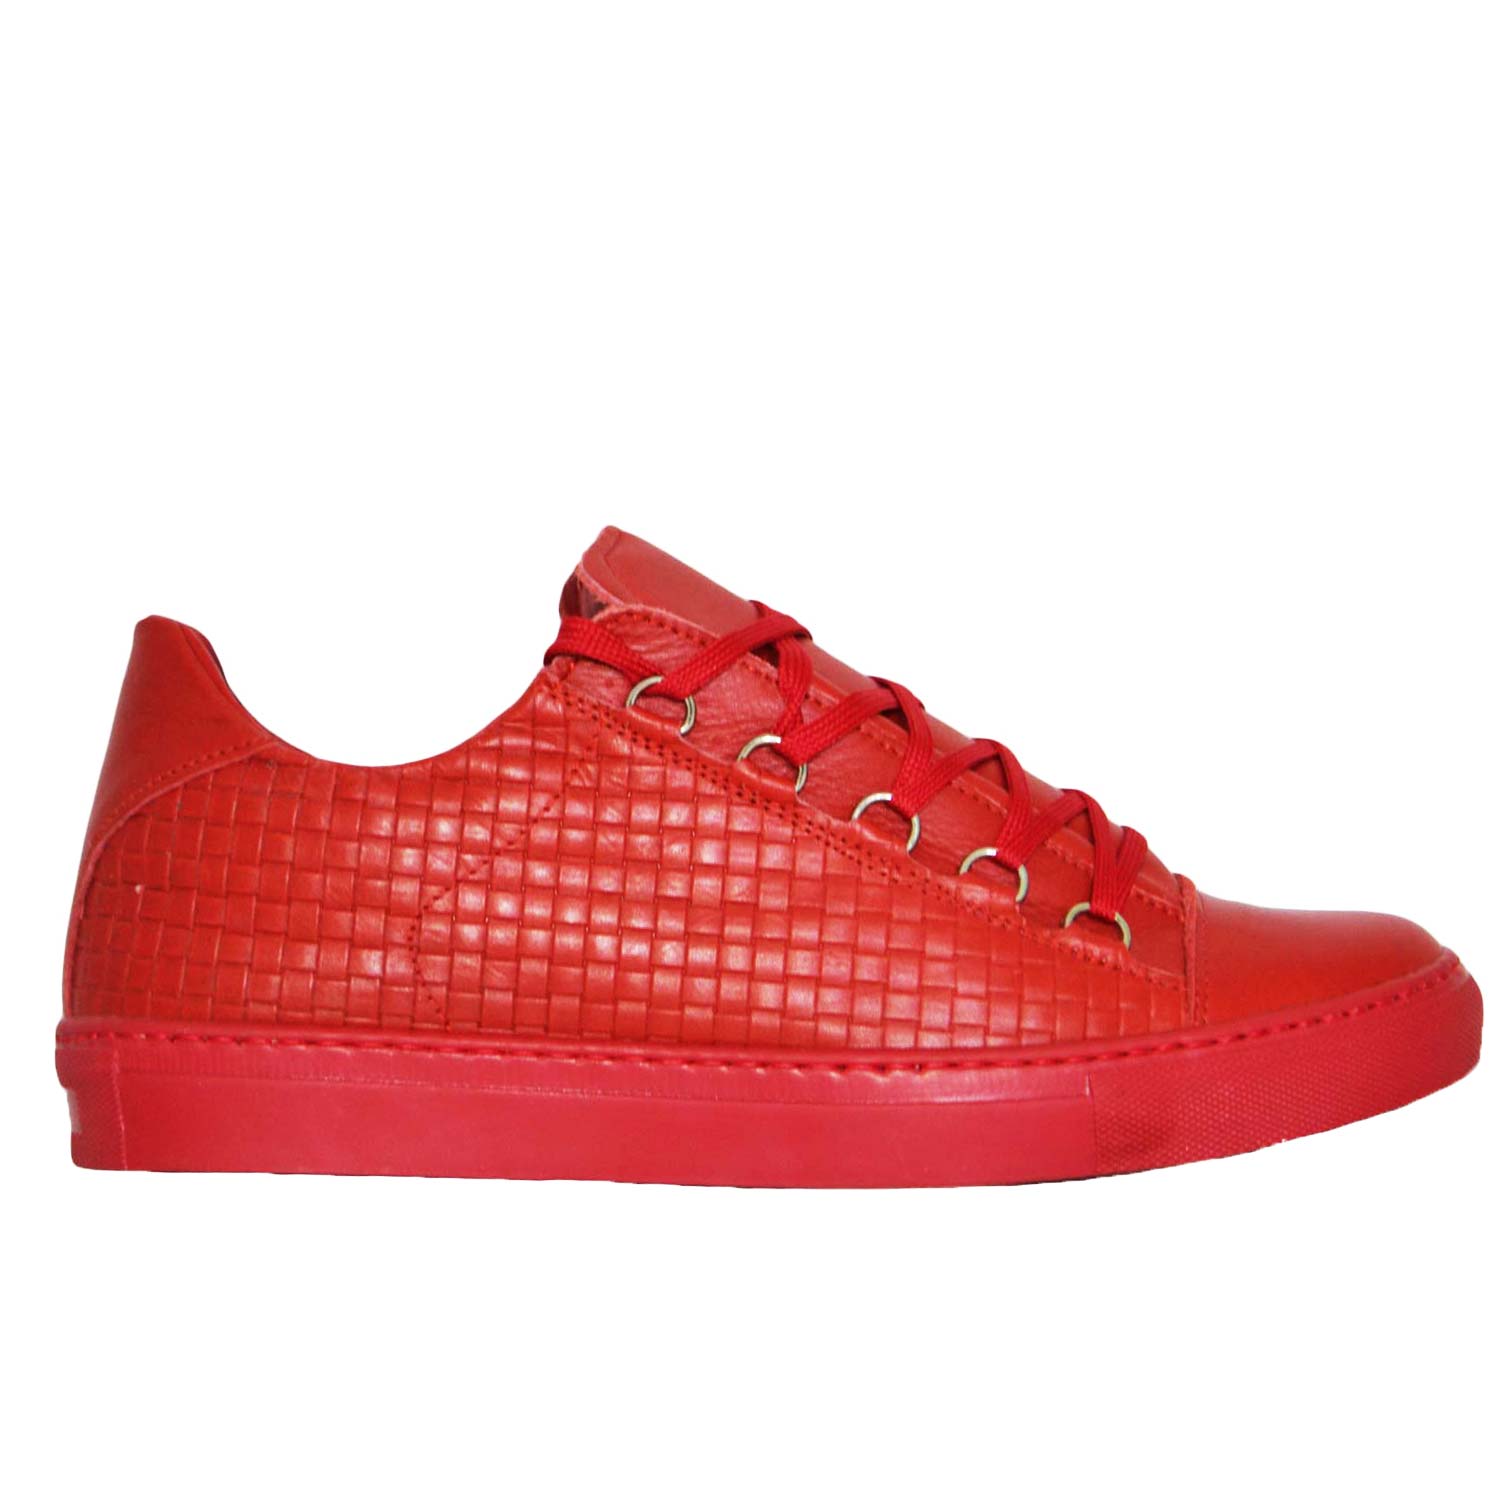 Sneakers bassa uomo in vera pelle rosso intrecciata a mano con ganci moda street trap style made i Italy.